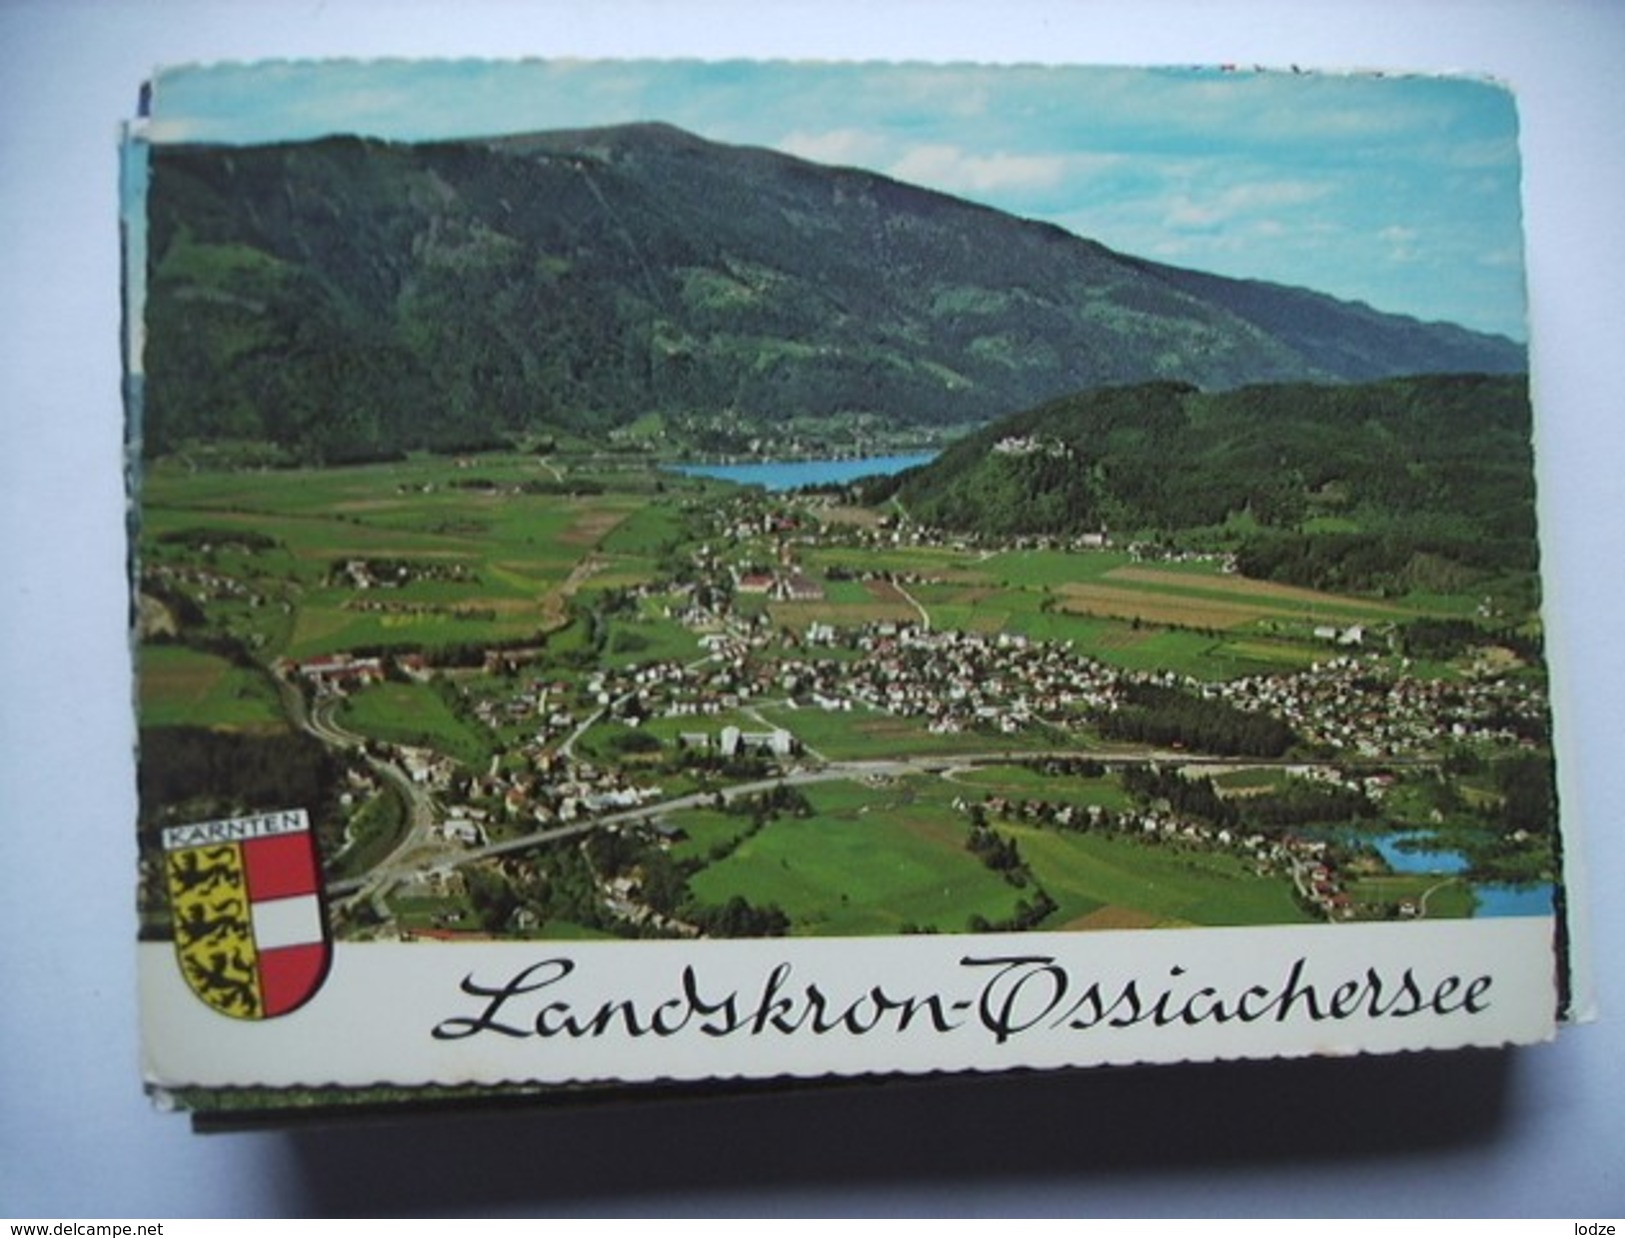 Oostenrijk Österreich Kärnten Ossiachersee Landskron - Ossiachersee-Orte